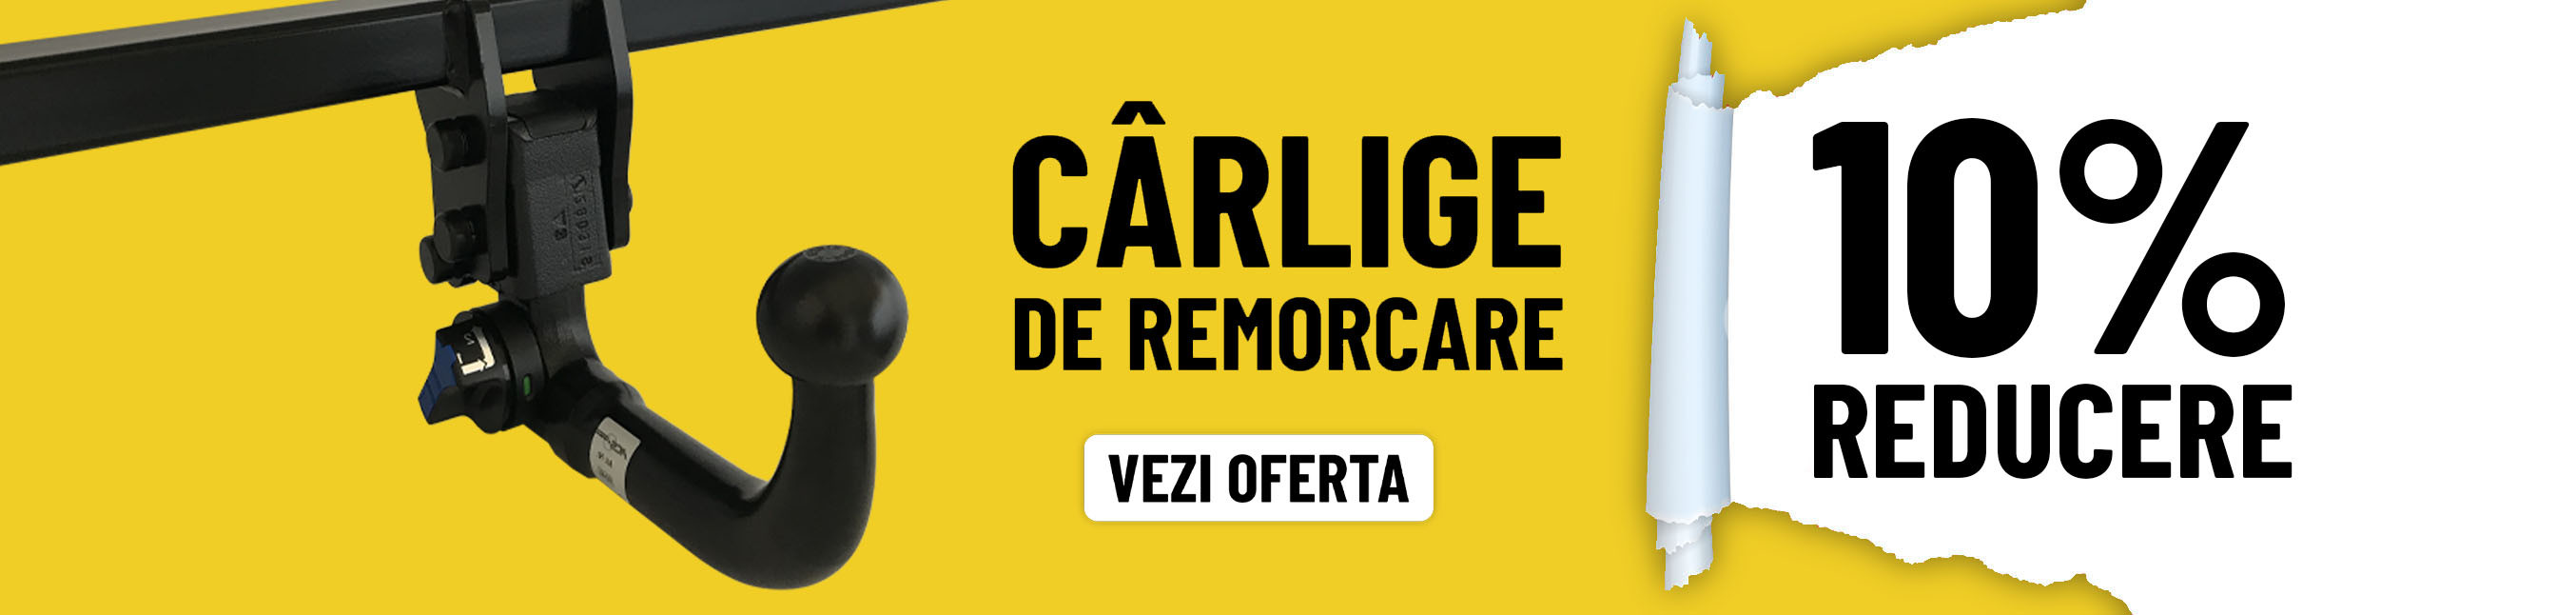 CARLIGE DE REMORCARE -10%